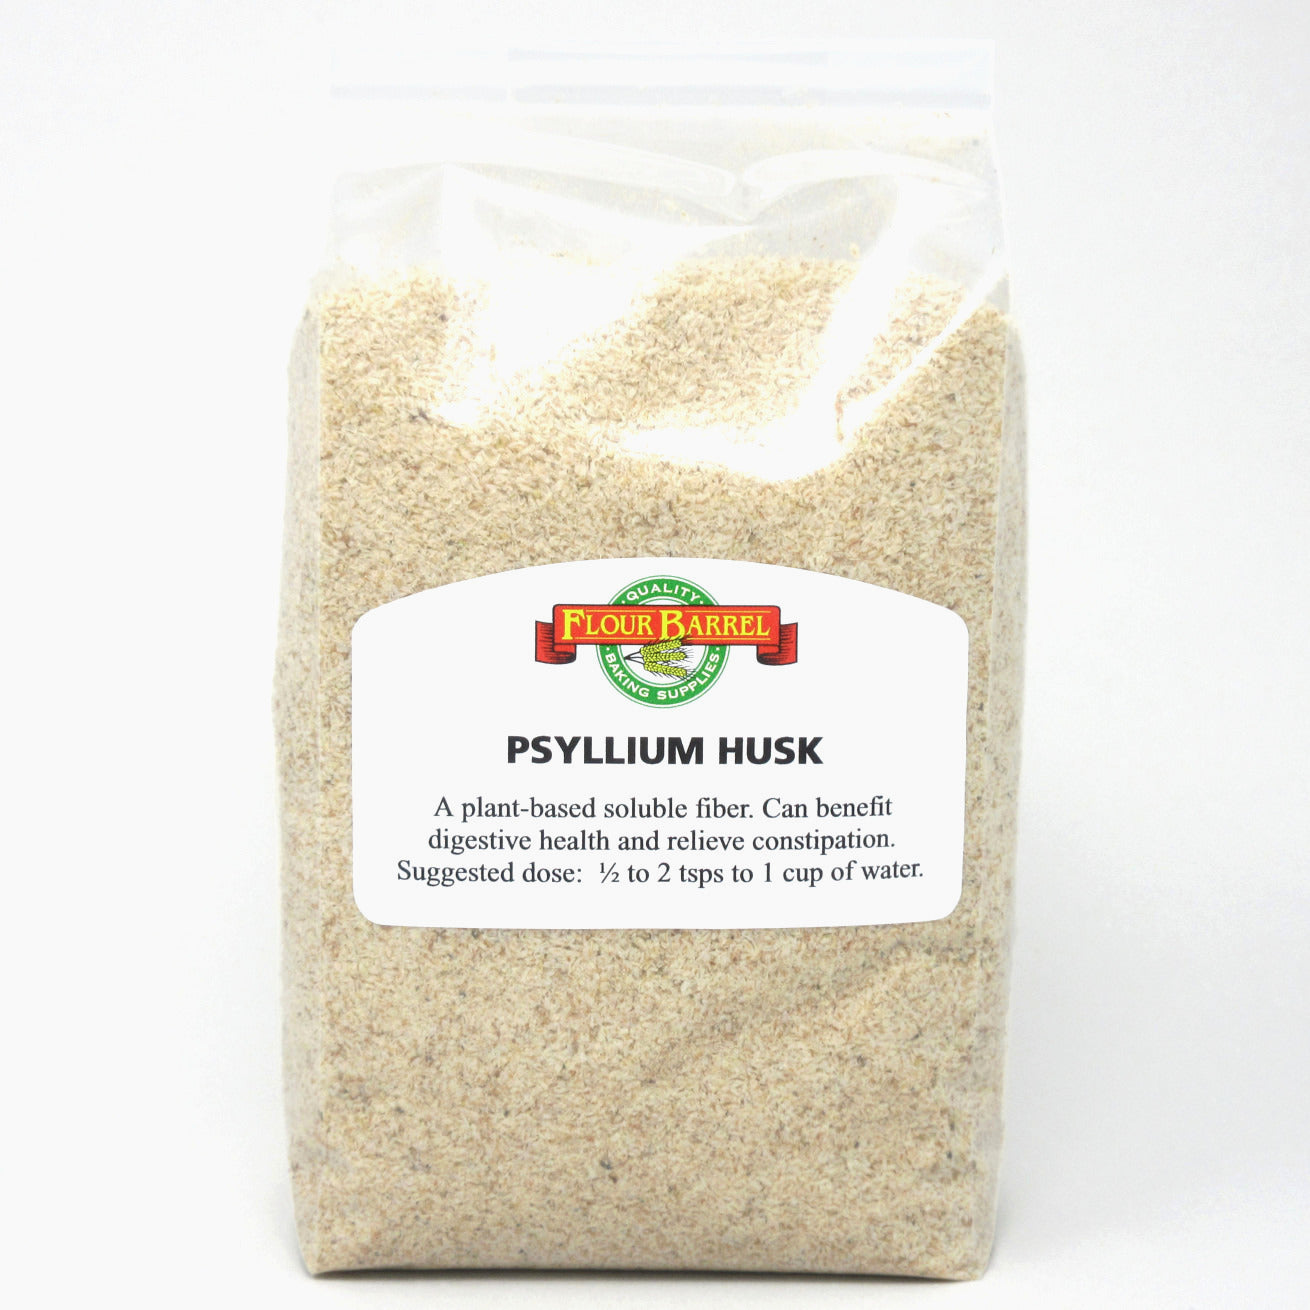 Flour Barrel product image - Psyllium Husk